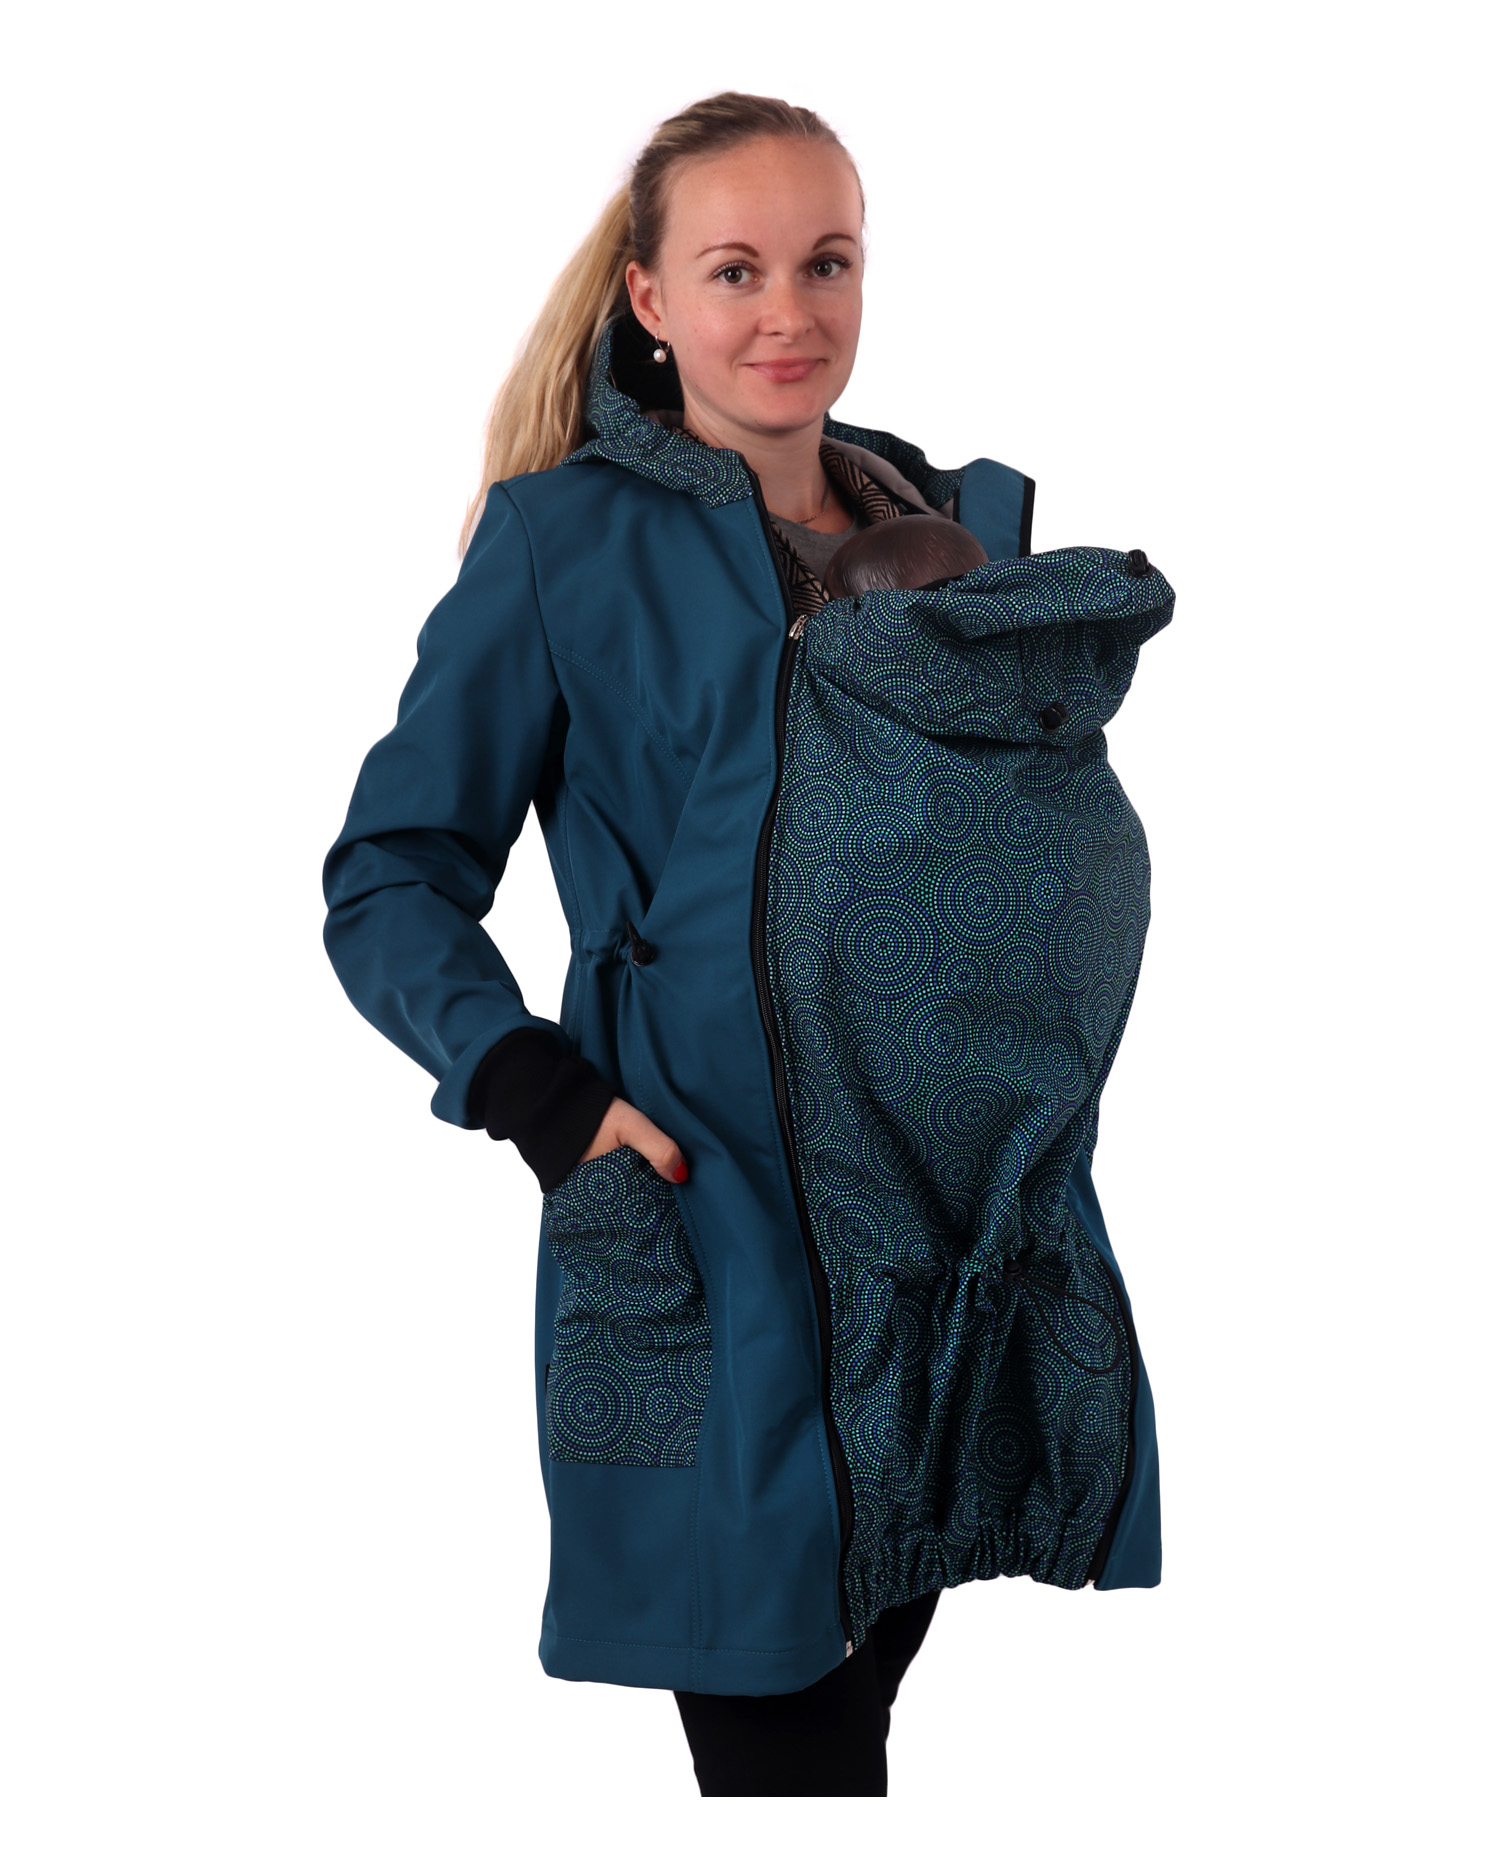 Softshellová nosící bunda Alva + TĚHOTENSKÁ vsadka, petrolejová a mandaly, L, střih pro menší postavu